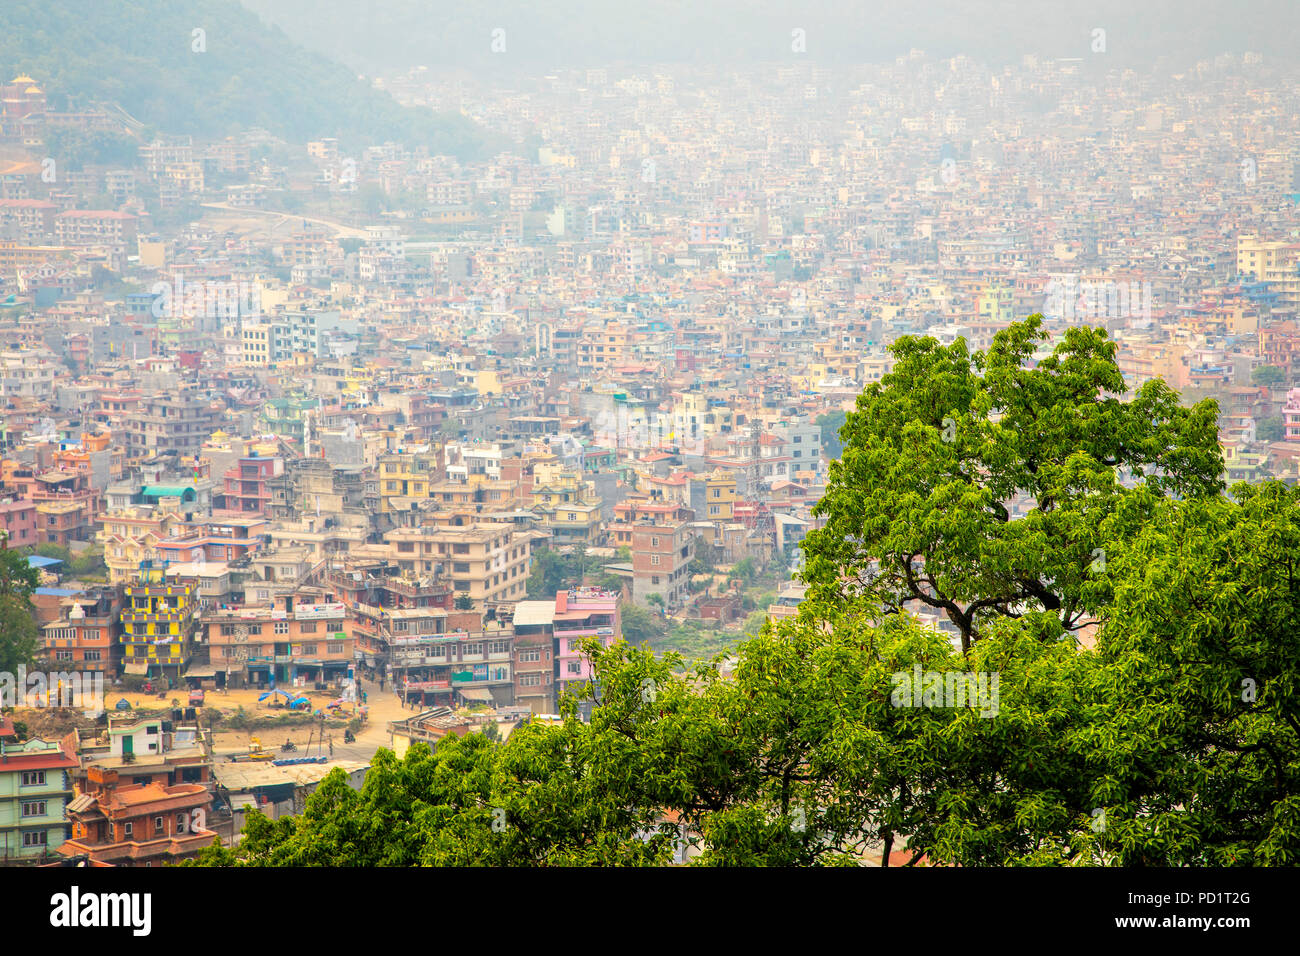 Der kiesige Hauptstadt Kathmandu mit einer Bevölkerung von 1,5 Millionen von oben aus Swayambhunath, Nepal. Stockfoto